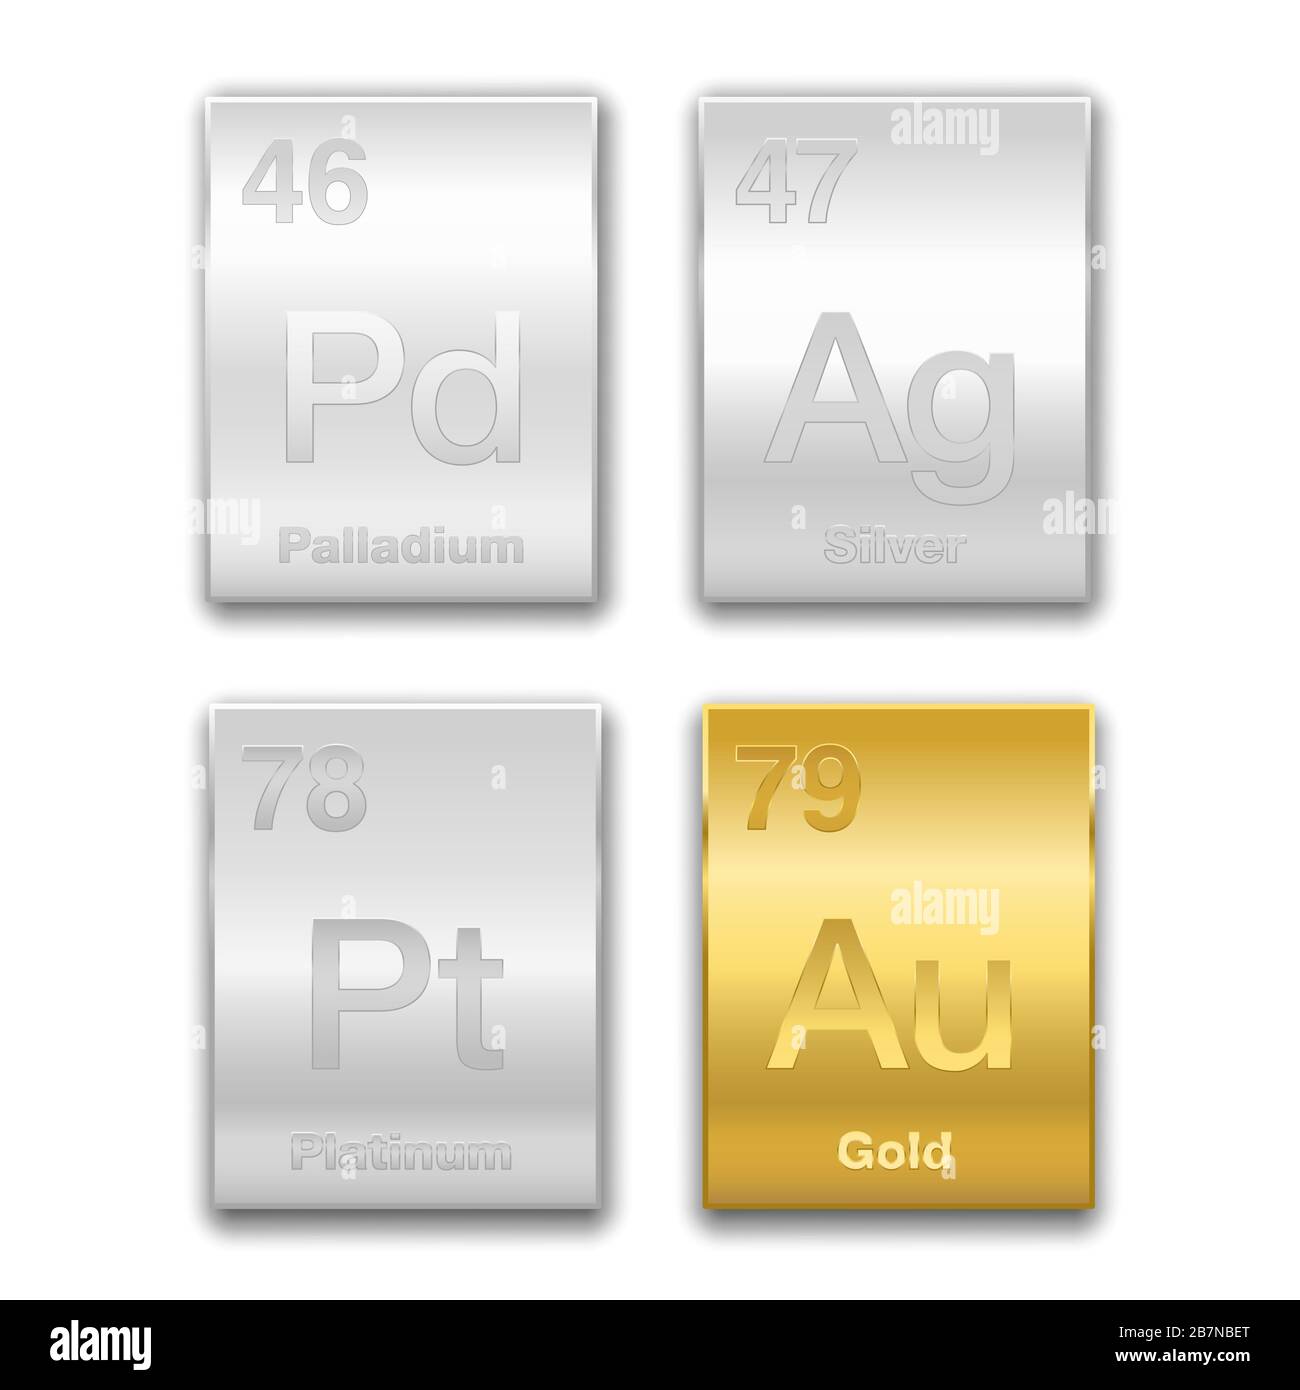 Gold, Silber, Platin, Palladium im Periodensystem. Edelmetalle, chemische  Elemente mit hohem wirtschaftlichen Wert. Symbole und Ordnungszahlen  Stockfotografie - Alamy